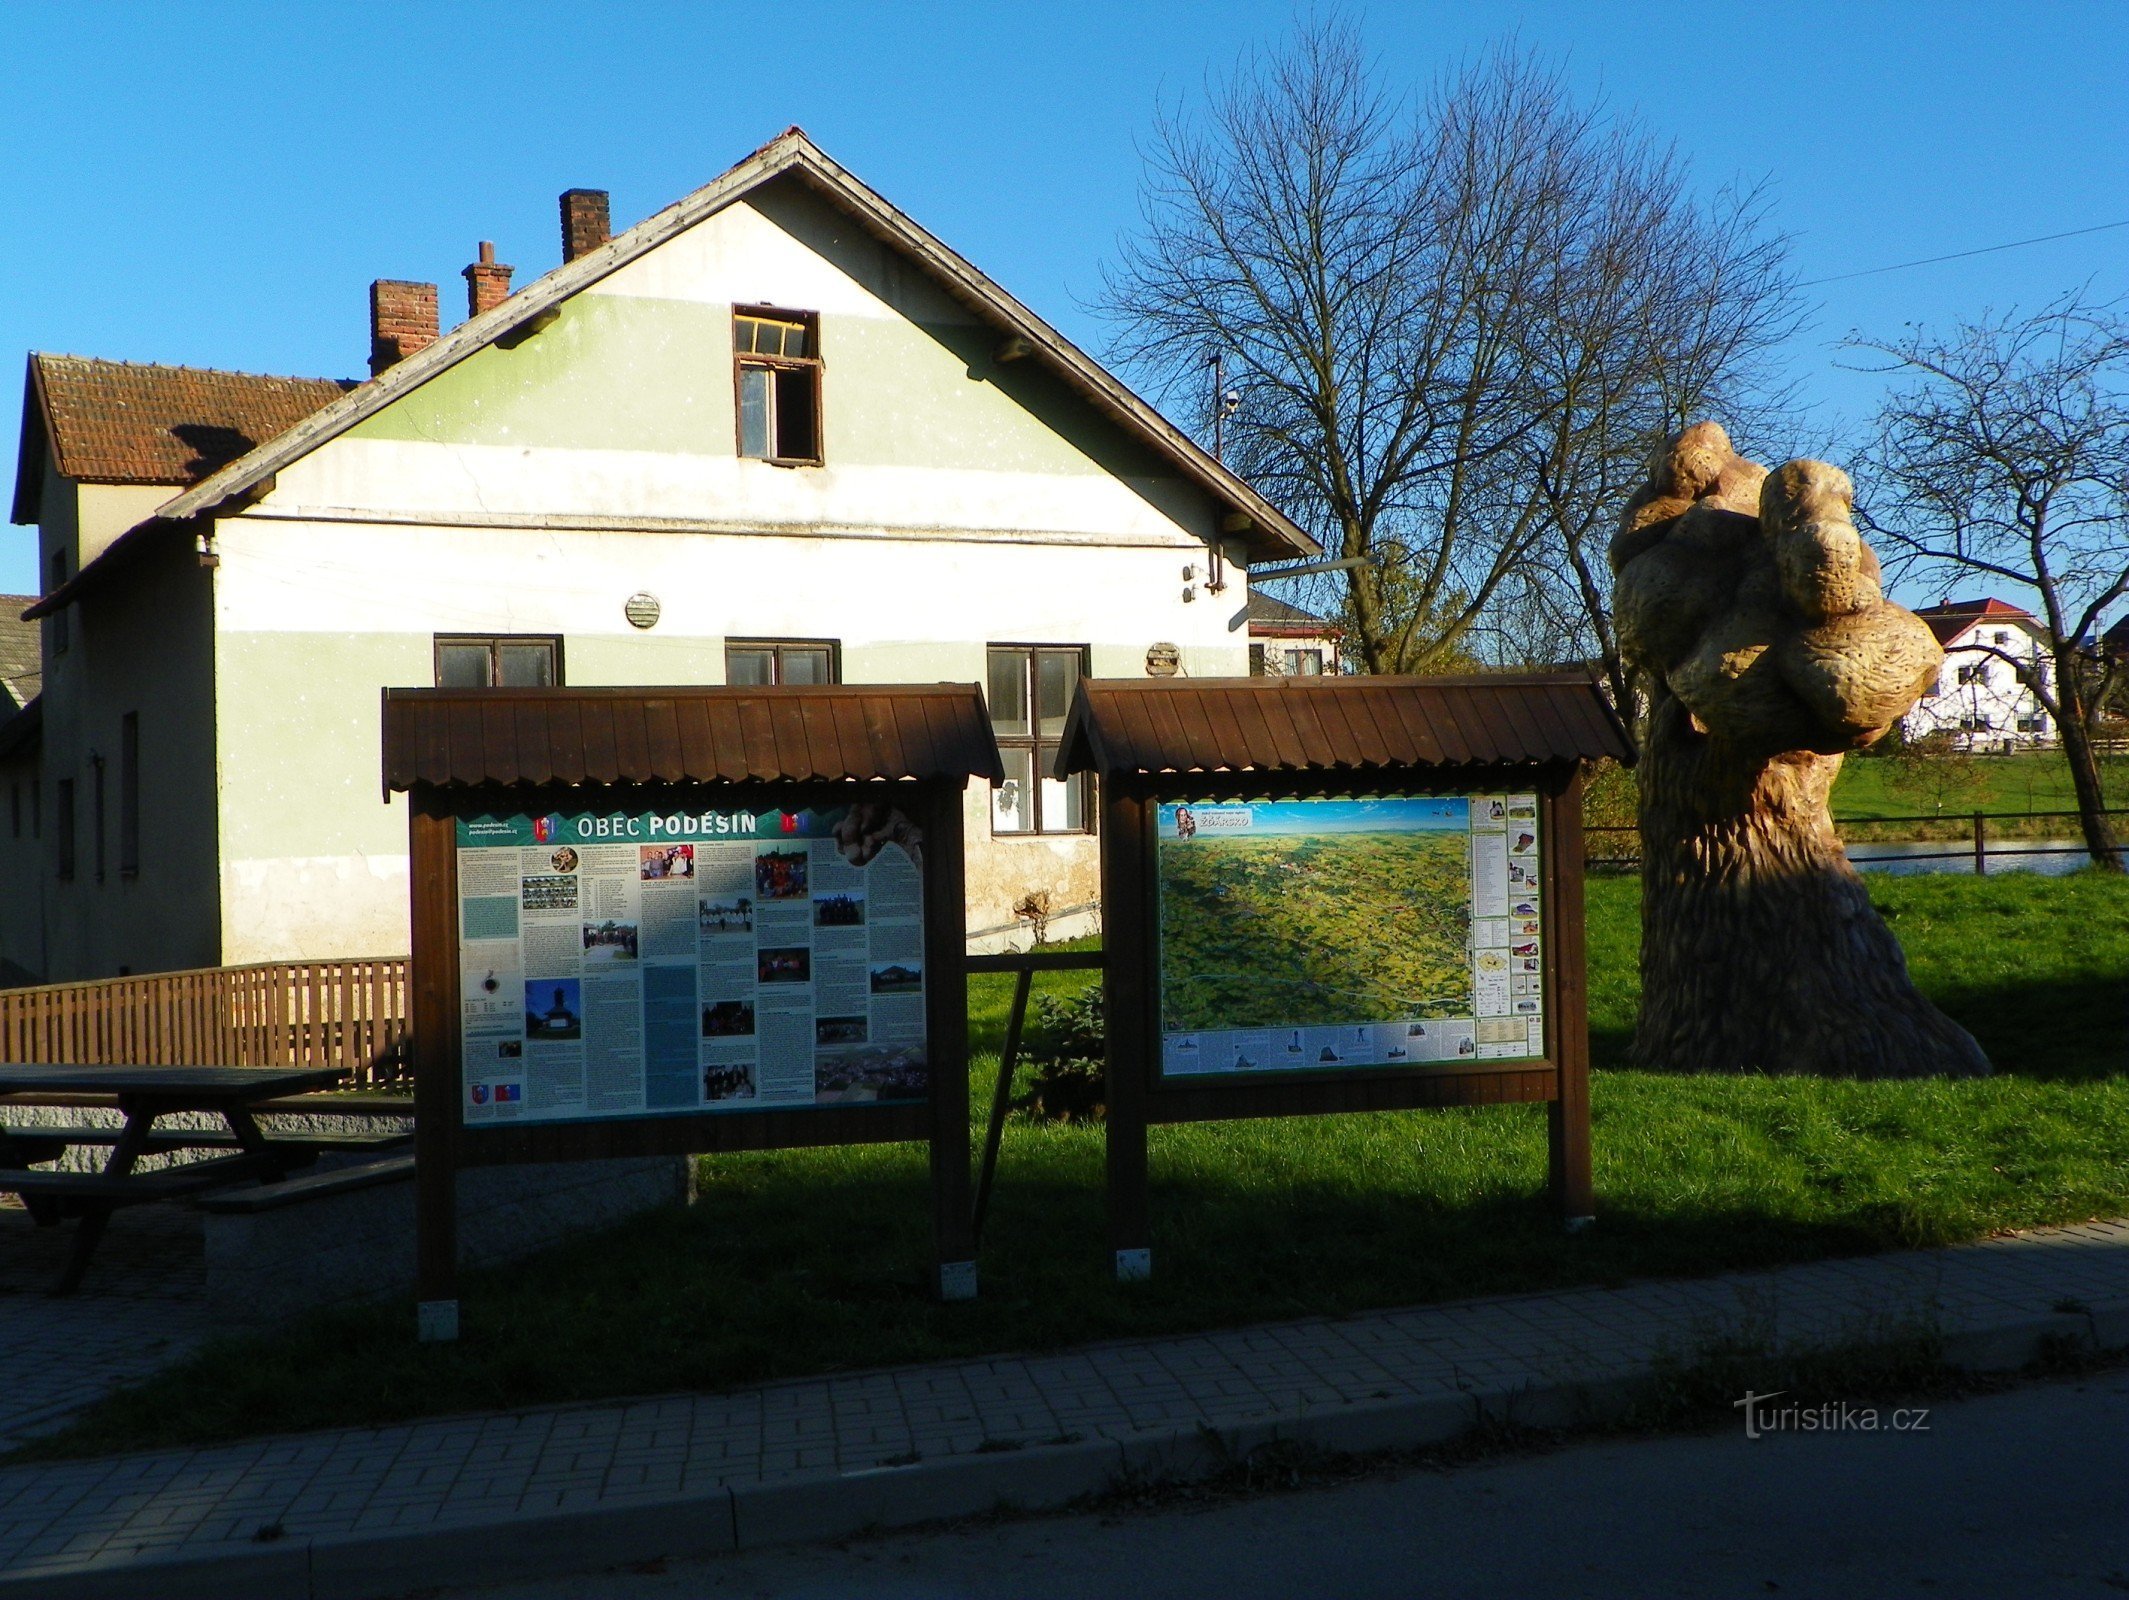 Bảng thông tin bên cây bê tông ở Poděšín